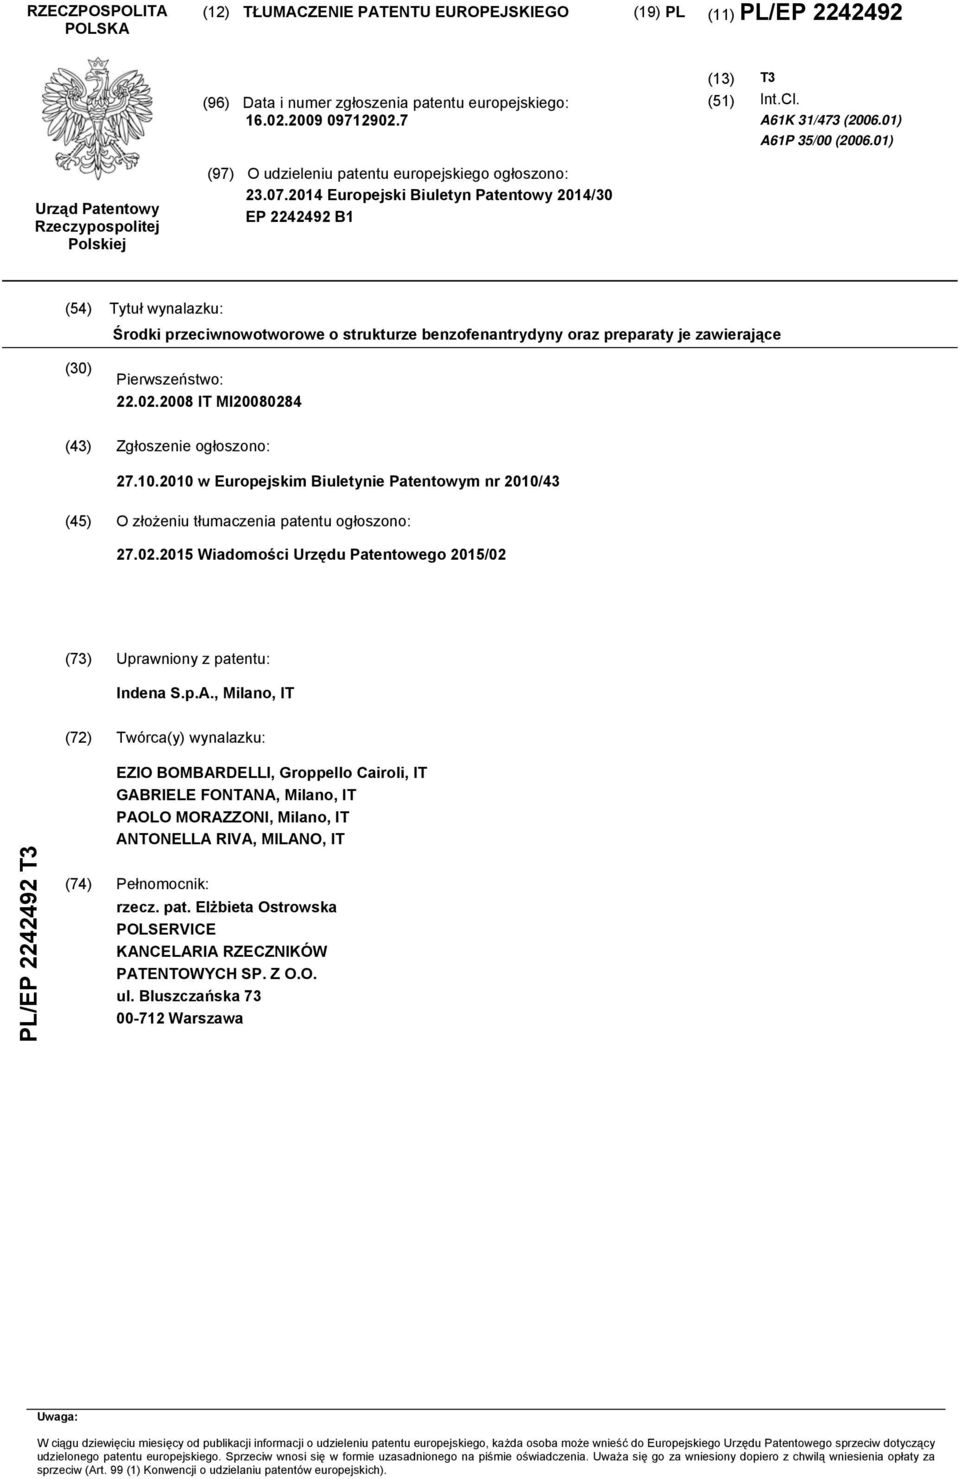 14 Europejski Biuletyn Patentowy 14/ EP 2242492 B1 (4) Tytuł wynalazku: Środki przeciwnowotworowe o strukturze benzofenantrydyny oraz preparaty je zawierające () Pierwszeństwo: 22.02.